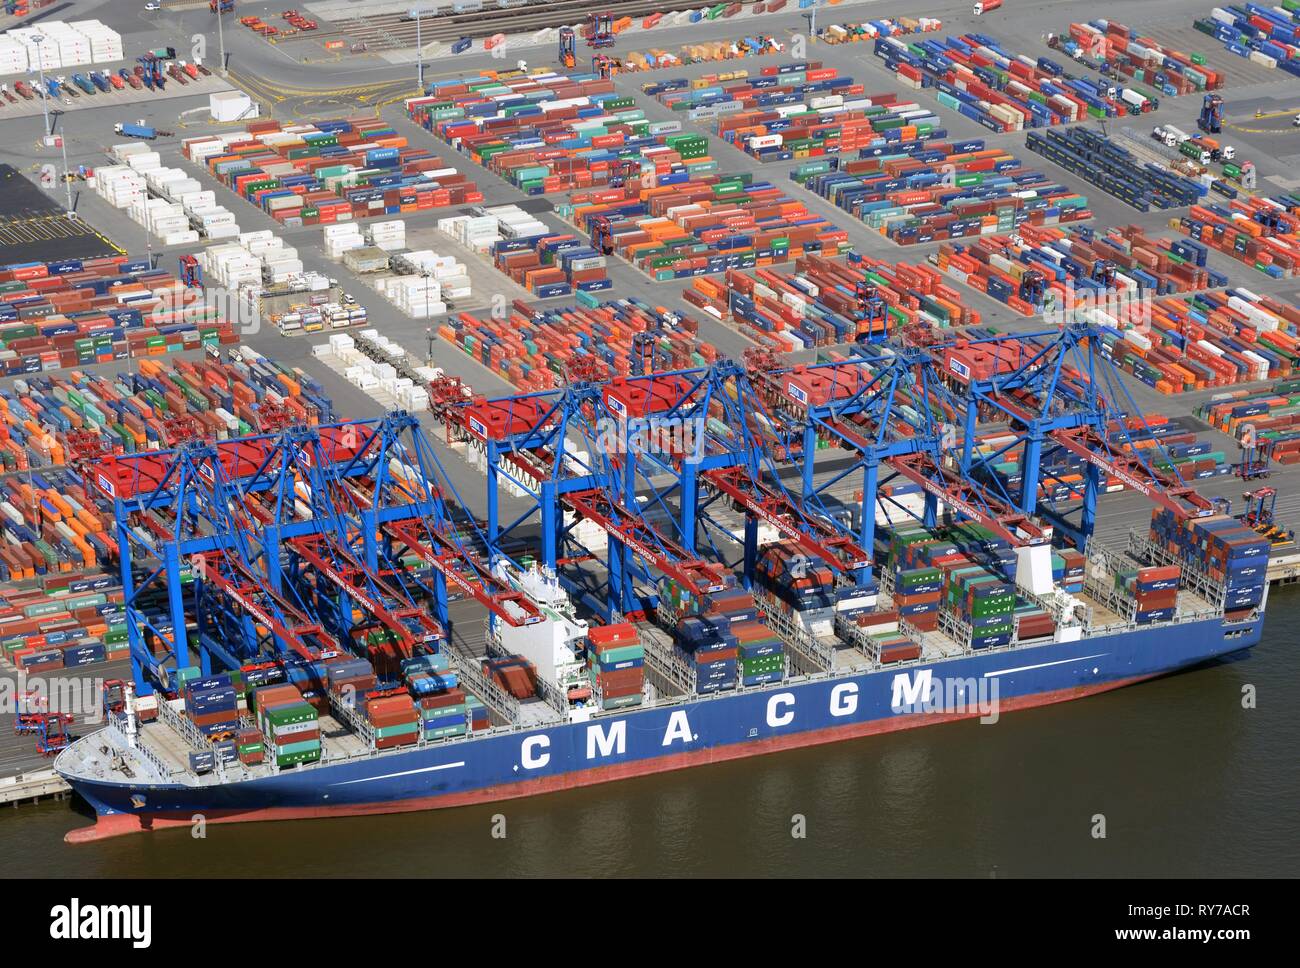 Porte-conteneurs CMA CGM dans le port à conteneurs, de chargement de conteneurs, Hambourg, Allemagne Banque D'Images